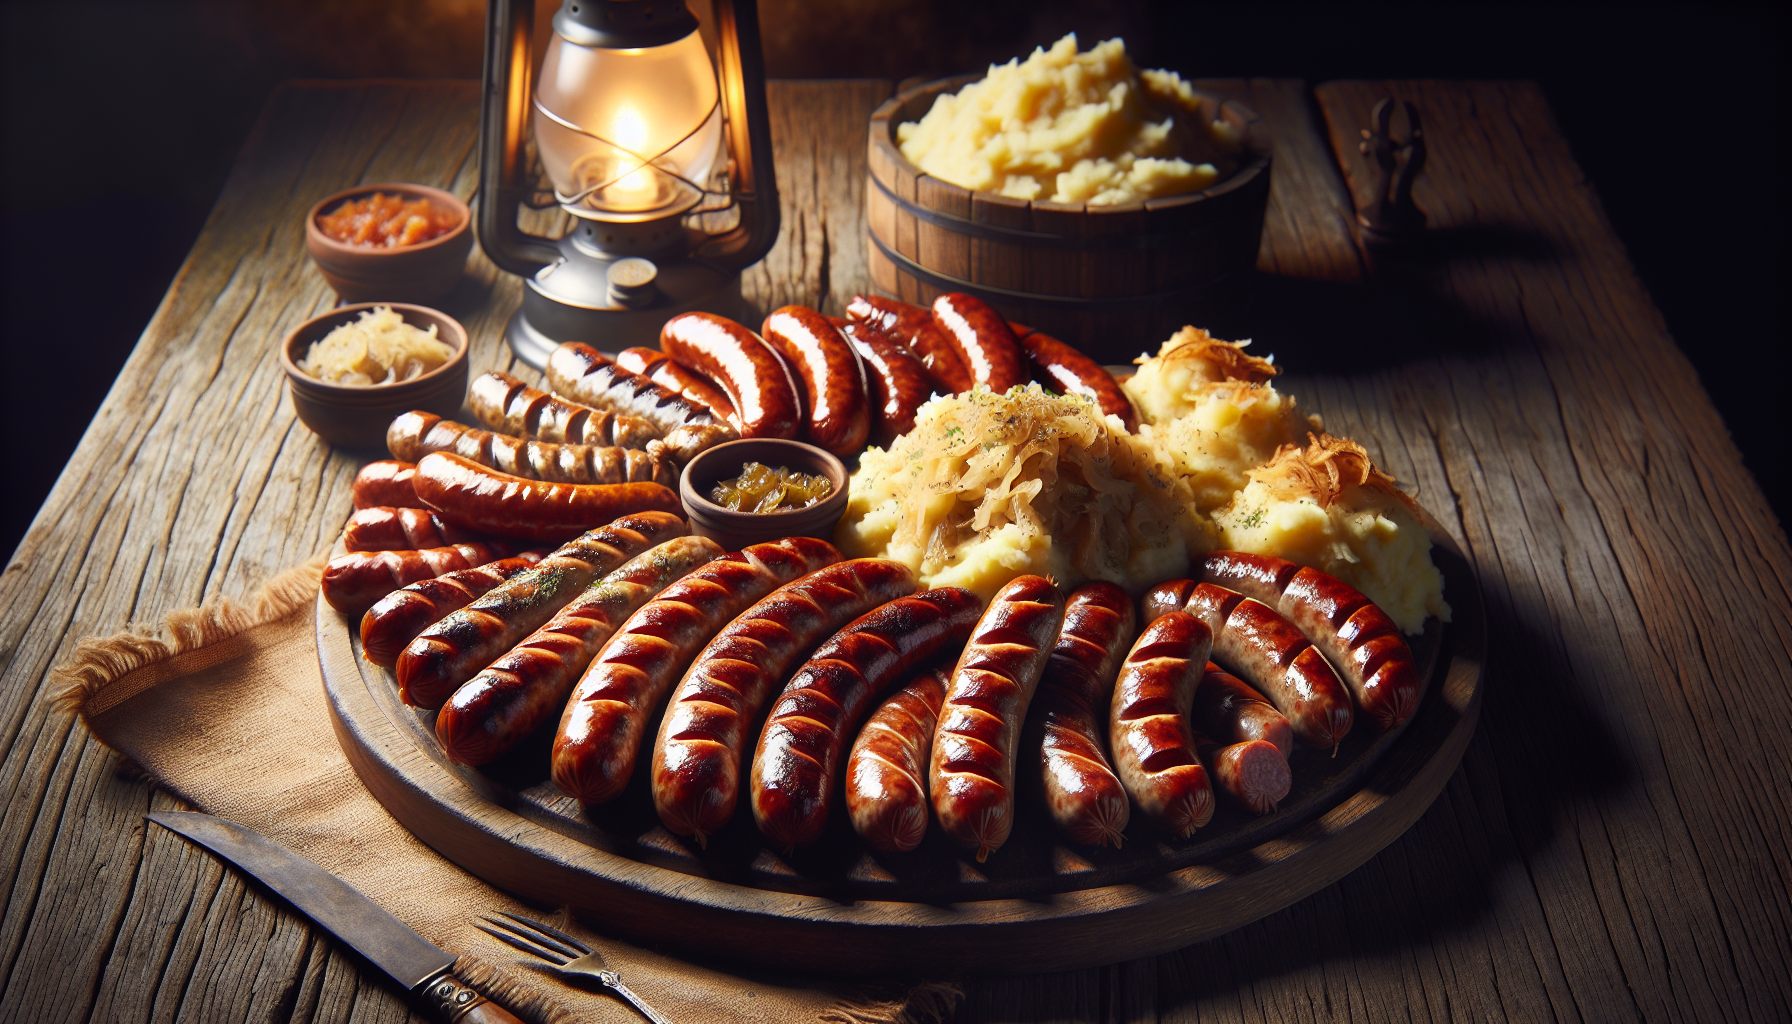 Sausage sampler platter at a German restaurant